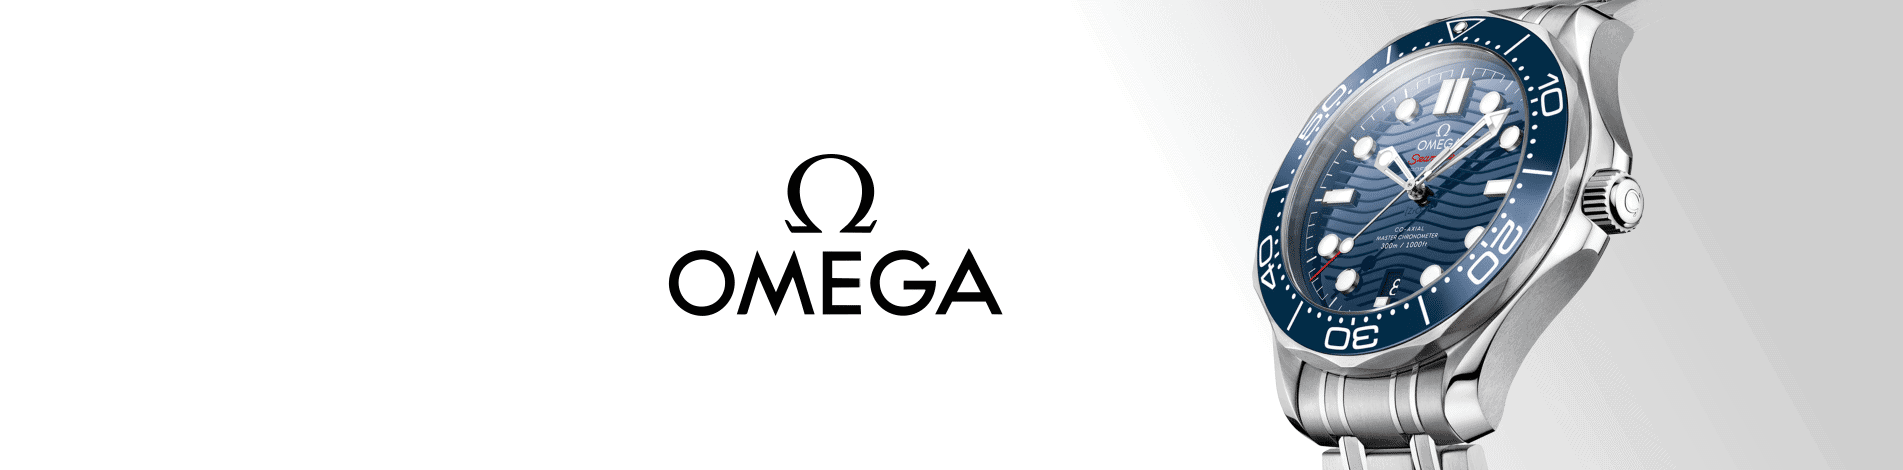 Omega Winder Category Banner Desktop